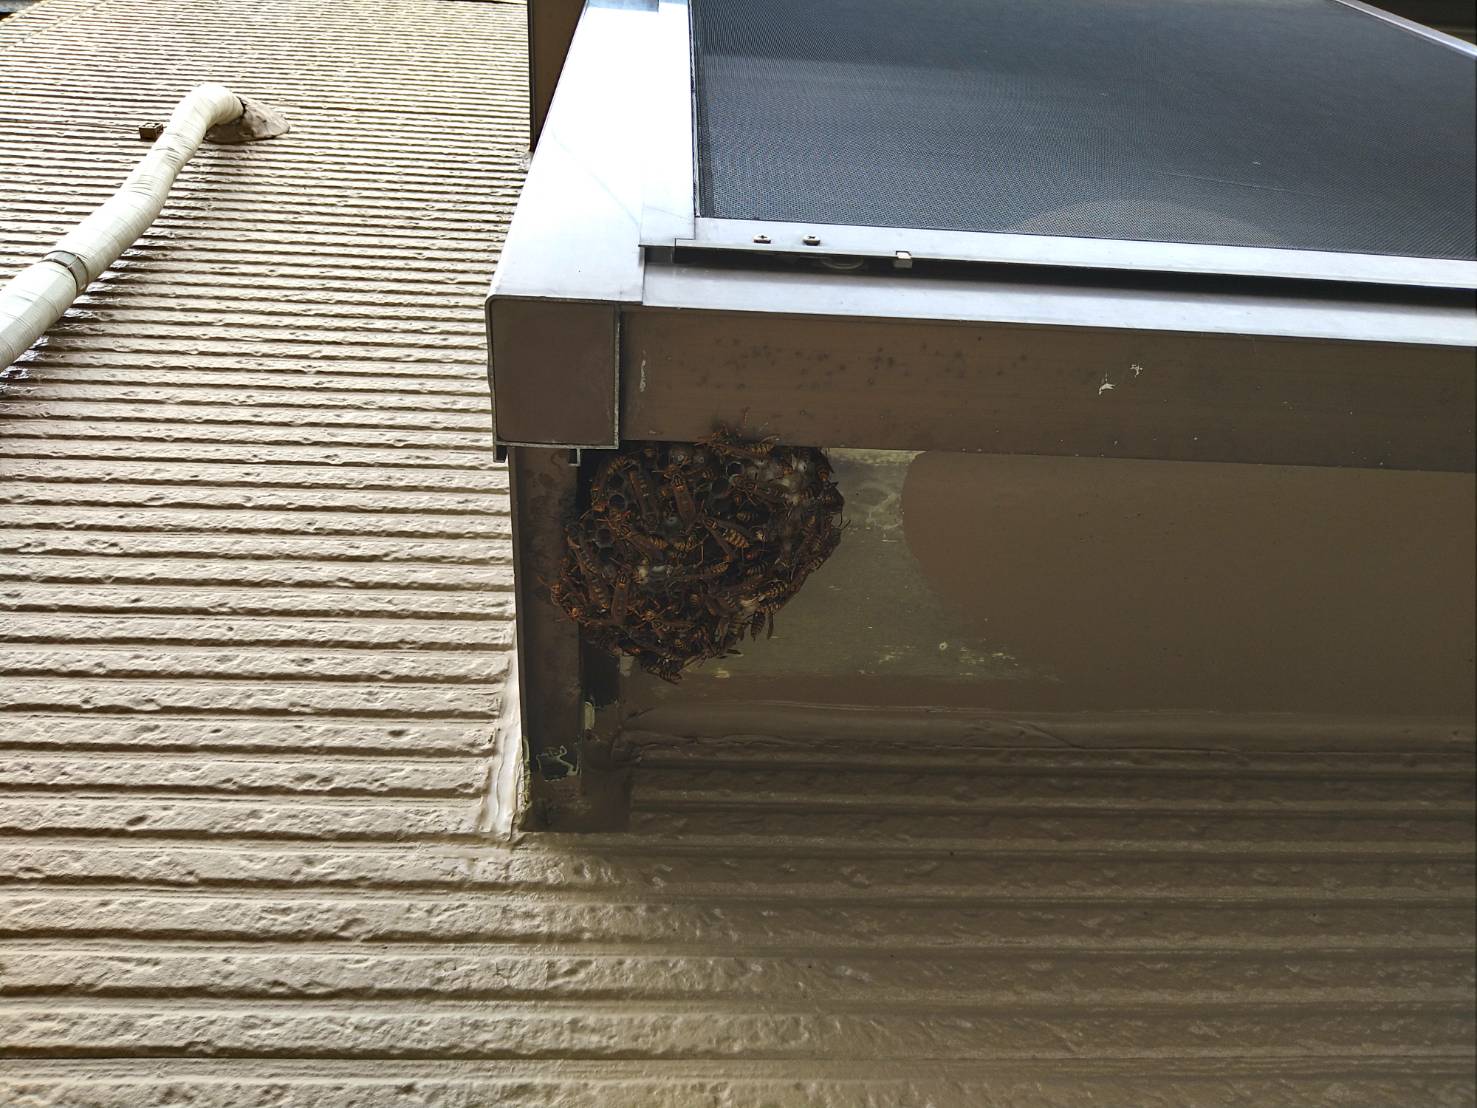 アパート1室の出窓下にアシナガバチの巣